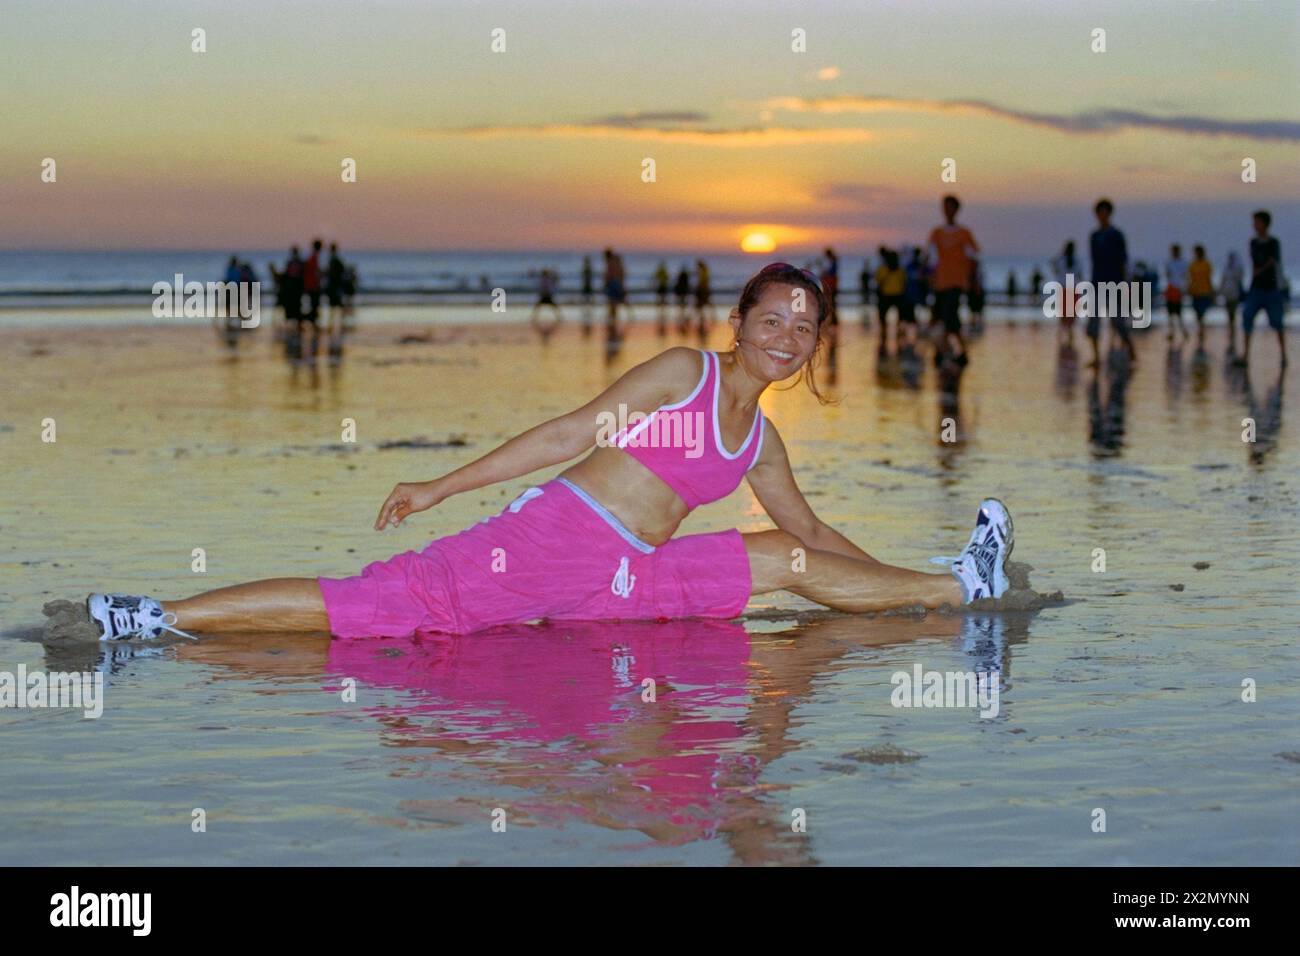 jeune femme indonésienne portant des vêtements de sport en passant par sa routine de maintien en forme sur une plage animée de kuta au coucher du soleil bali indonésie 2004 Banque D'Images